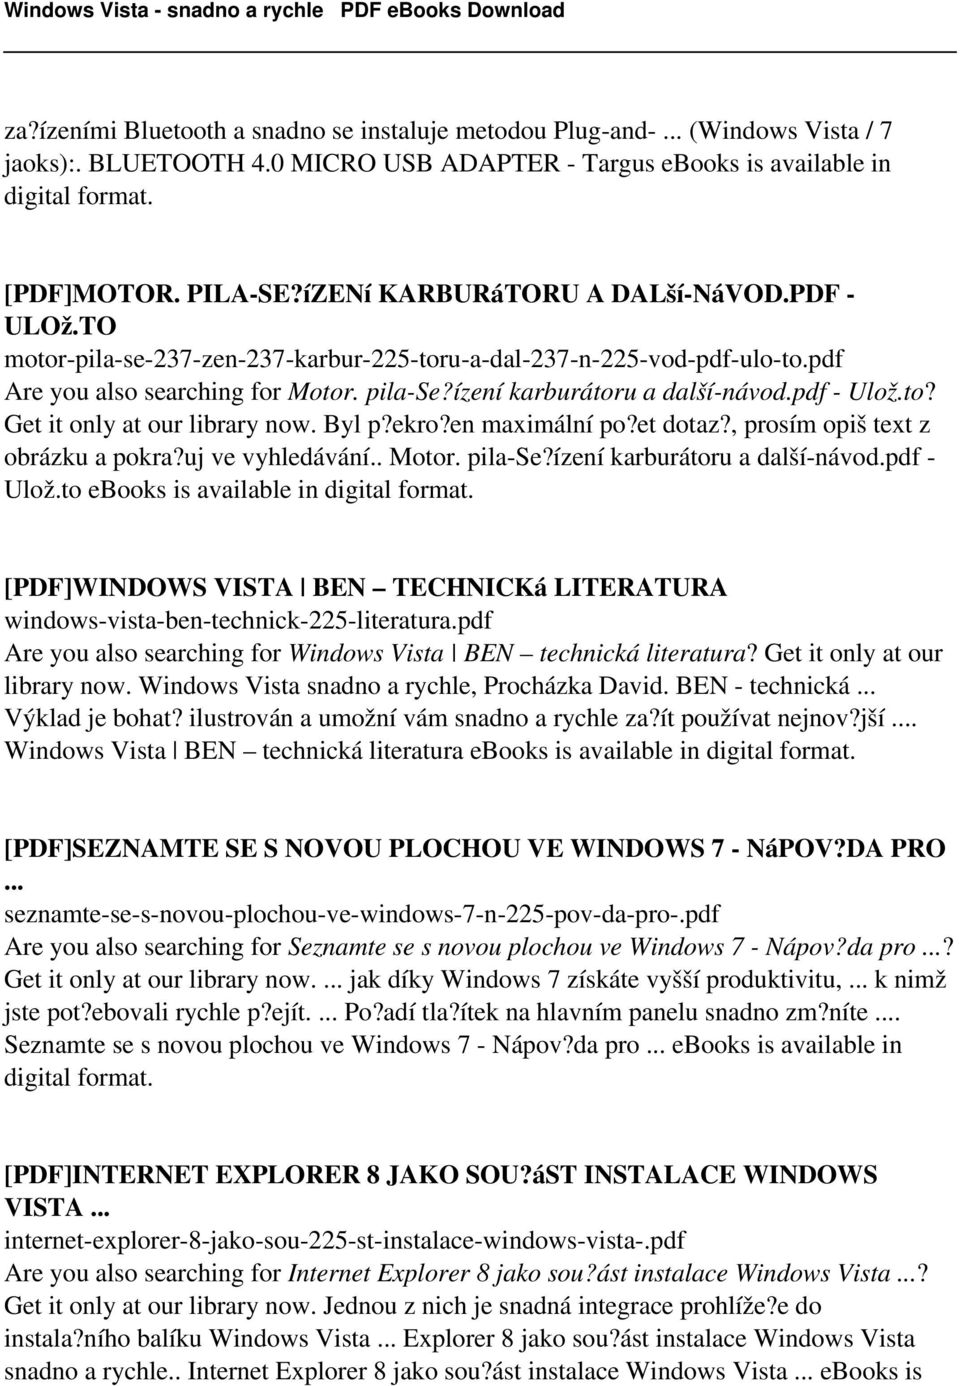 pdf - Ulož.to? Get it only at our library now. Byl p?ekro?en maximální po?et dotaz?, prosím opiš text z obrázku a pokra?uj ve vyhledávání.. Motor. pila-se?ízení karburátoru a další-návod.pdf - Ulož.to ebooks is [PDF]WINDOWS VISTA BEN TECHNICKá LITERATURA windows-vista-ben-technick-225-literatura.